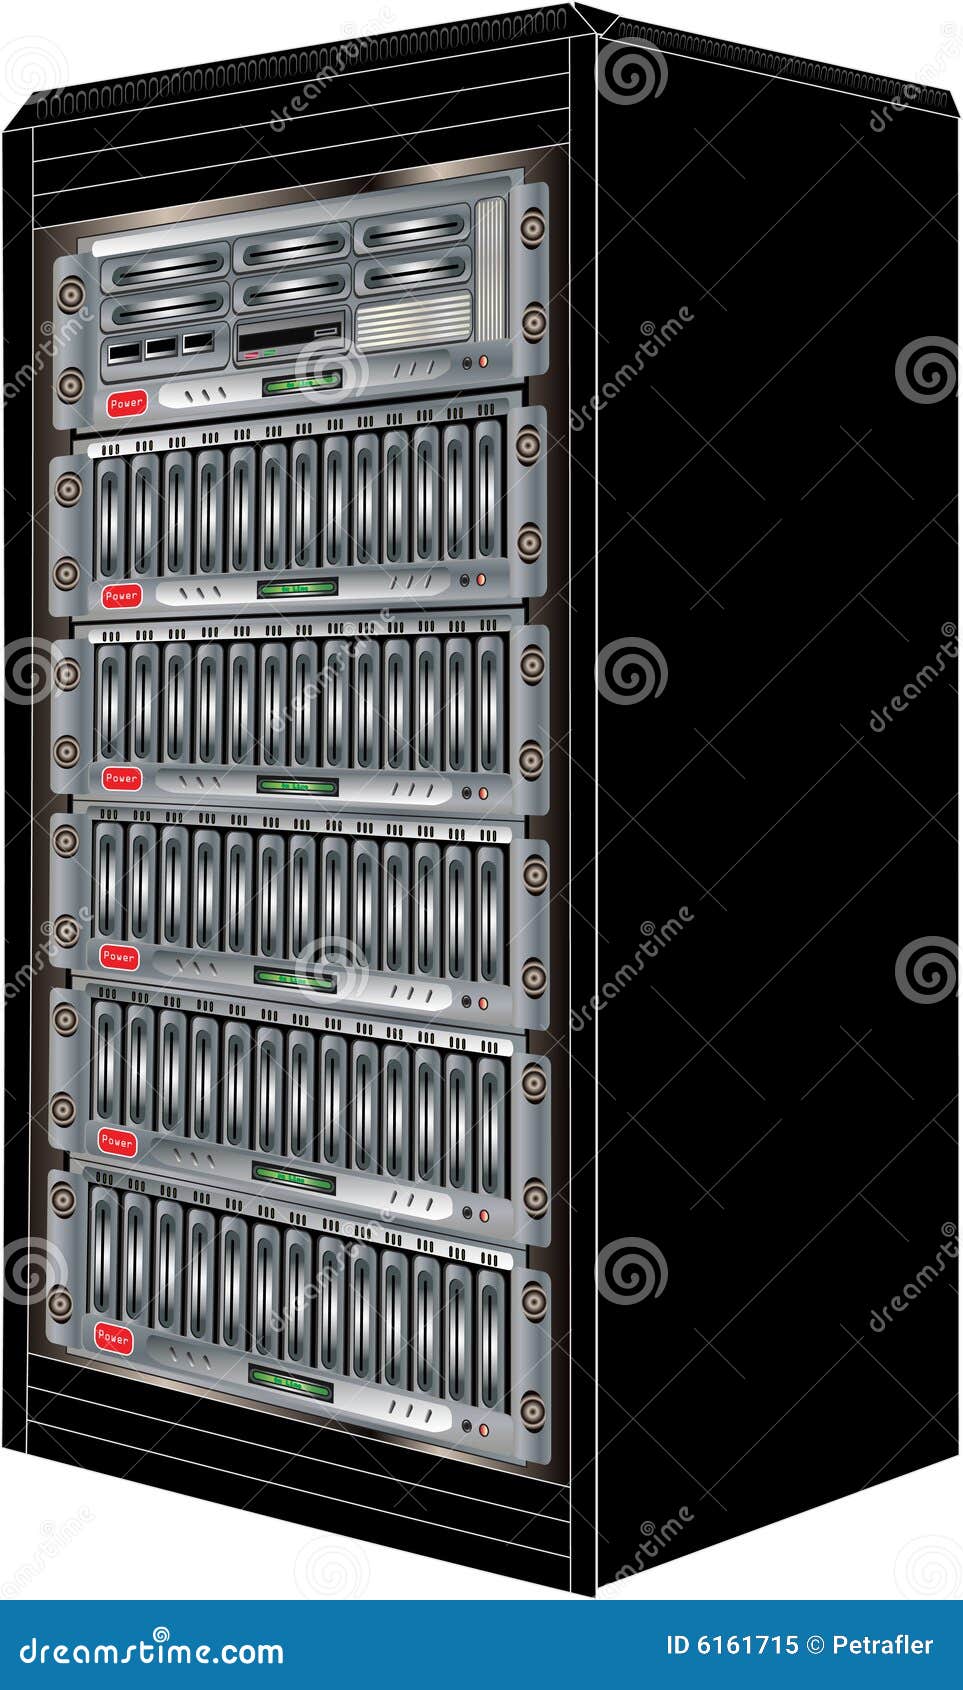 Gabinete do server do computador. A ilustração do gabinete com o server submetido do computador e o armazenamento, vetor desenhado com acompanhamento do vetor formatam